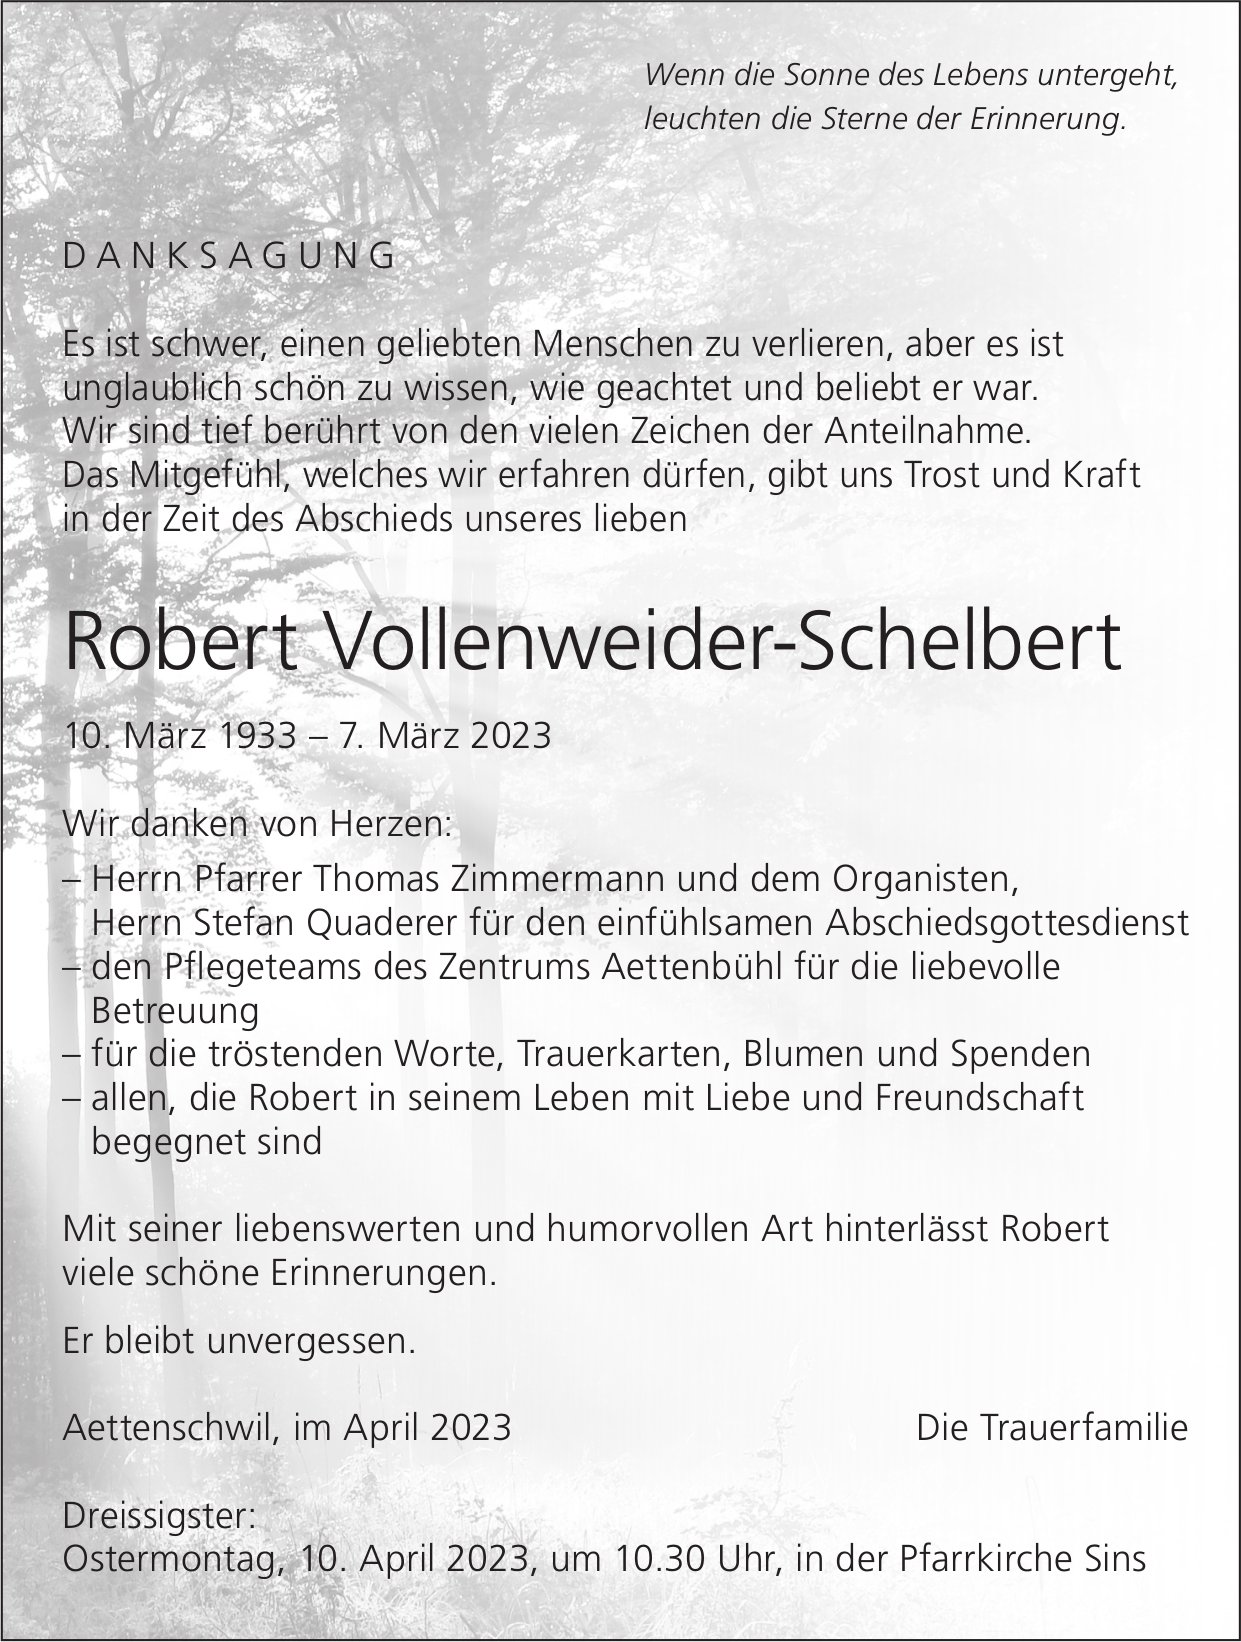 Vollenweider-Schelbert Robert, im April 2023 / DS